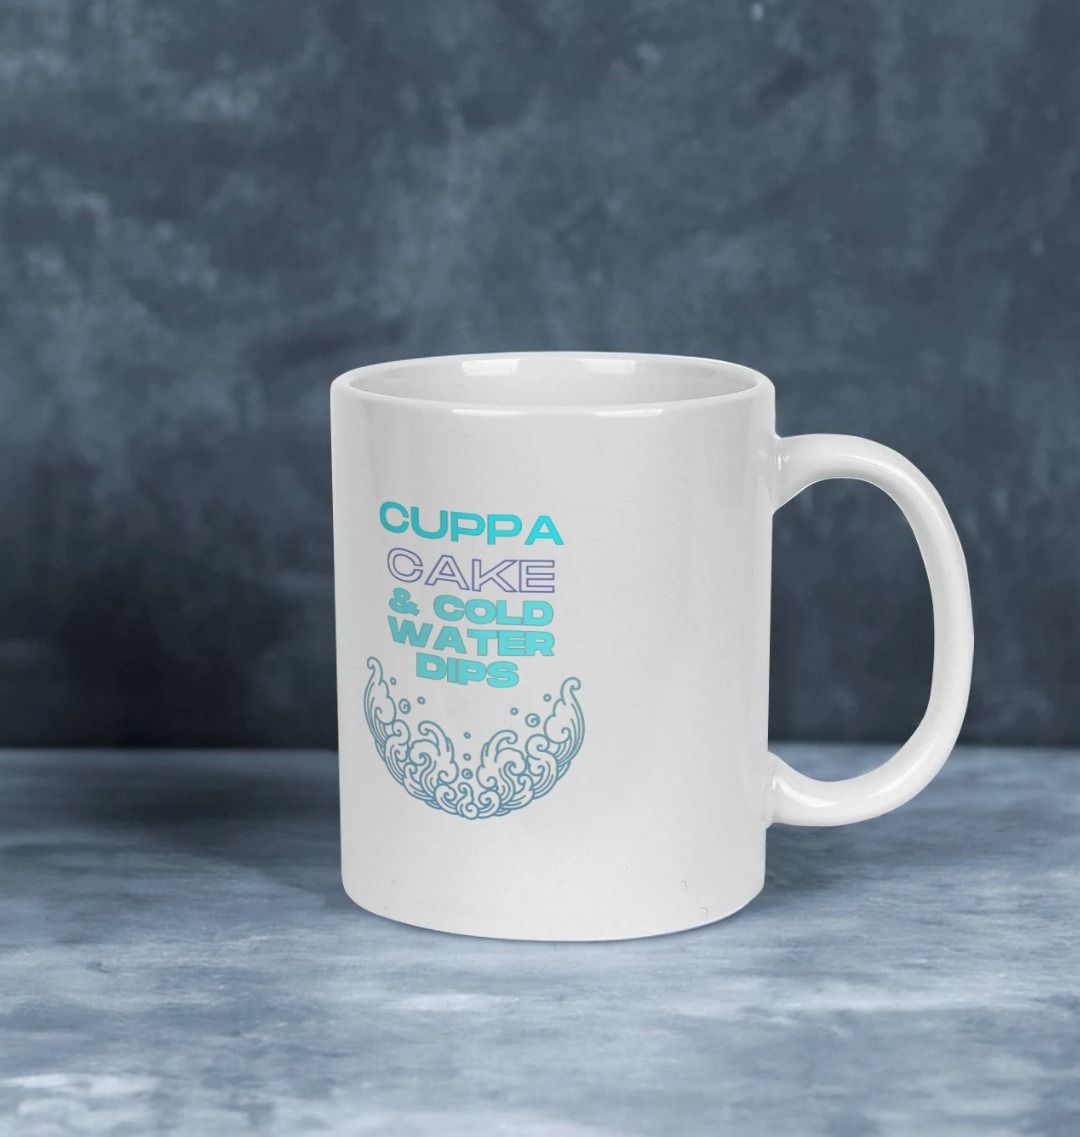 'CUPPA & CAKE' Mug